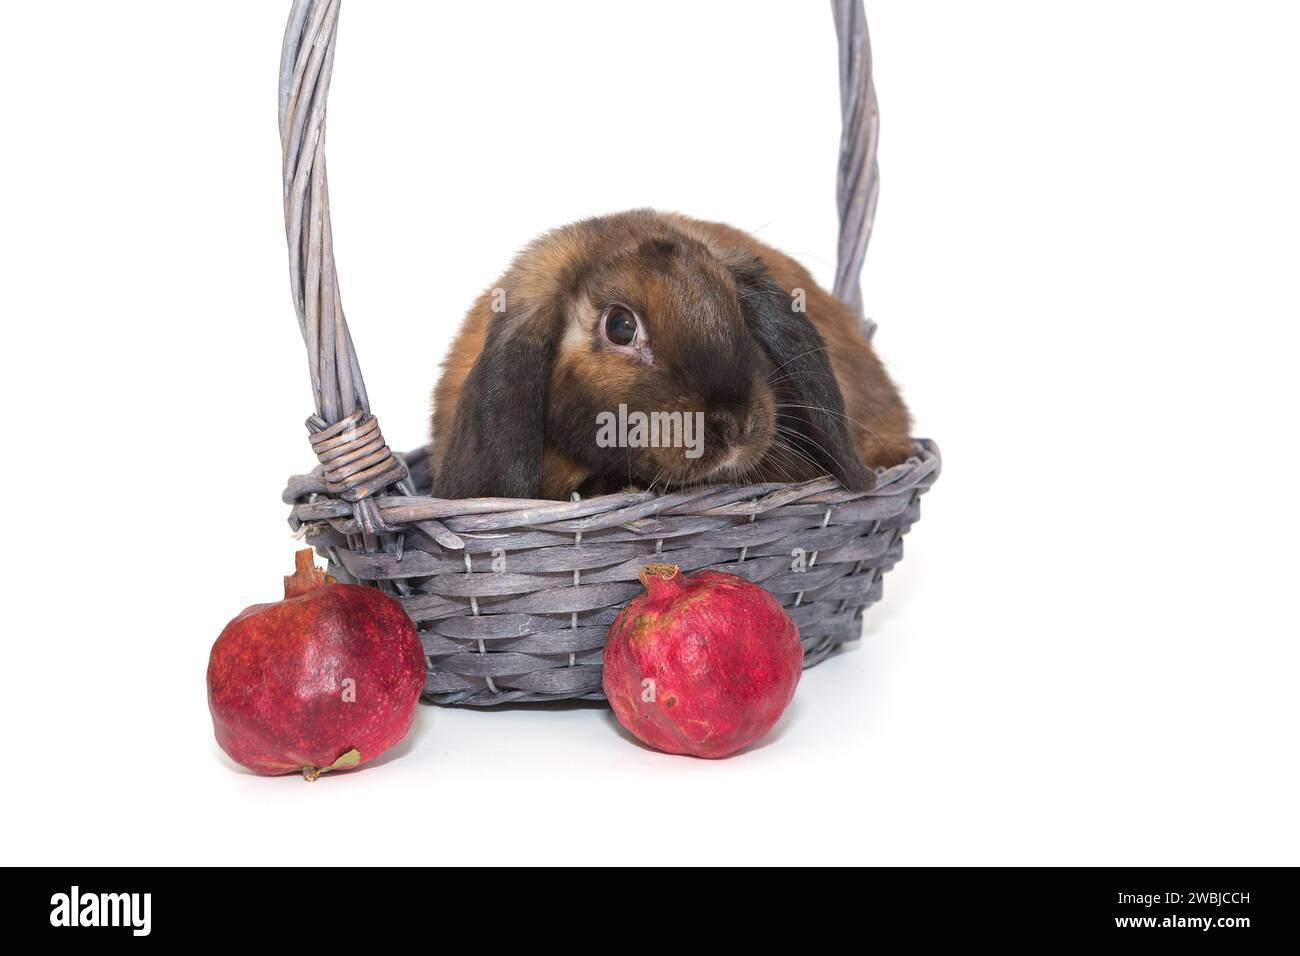 Dekoratives Kaninchen in einem Korb und Granatäpfel, isoliert auf weißem Hintergrund Stockfoto